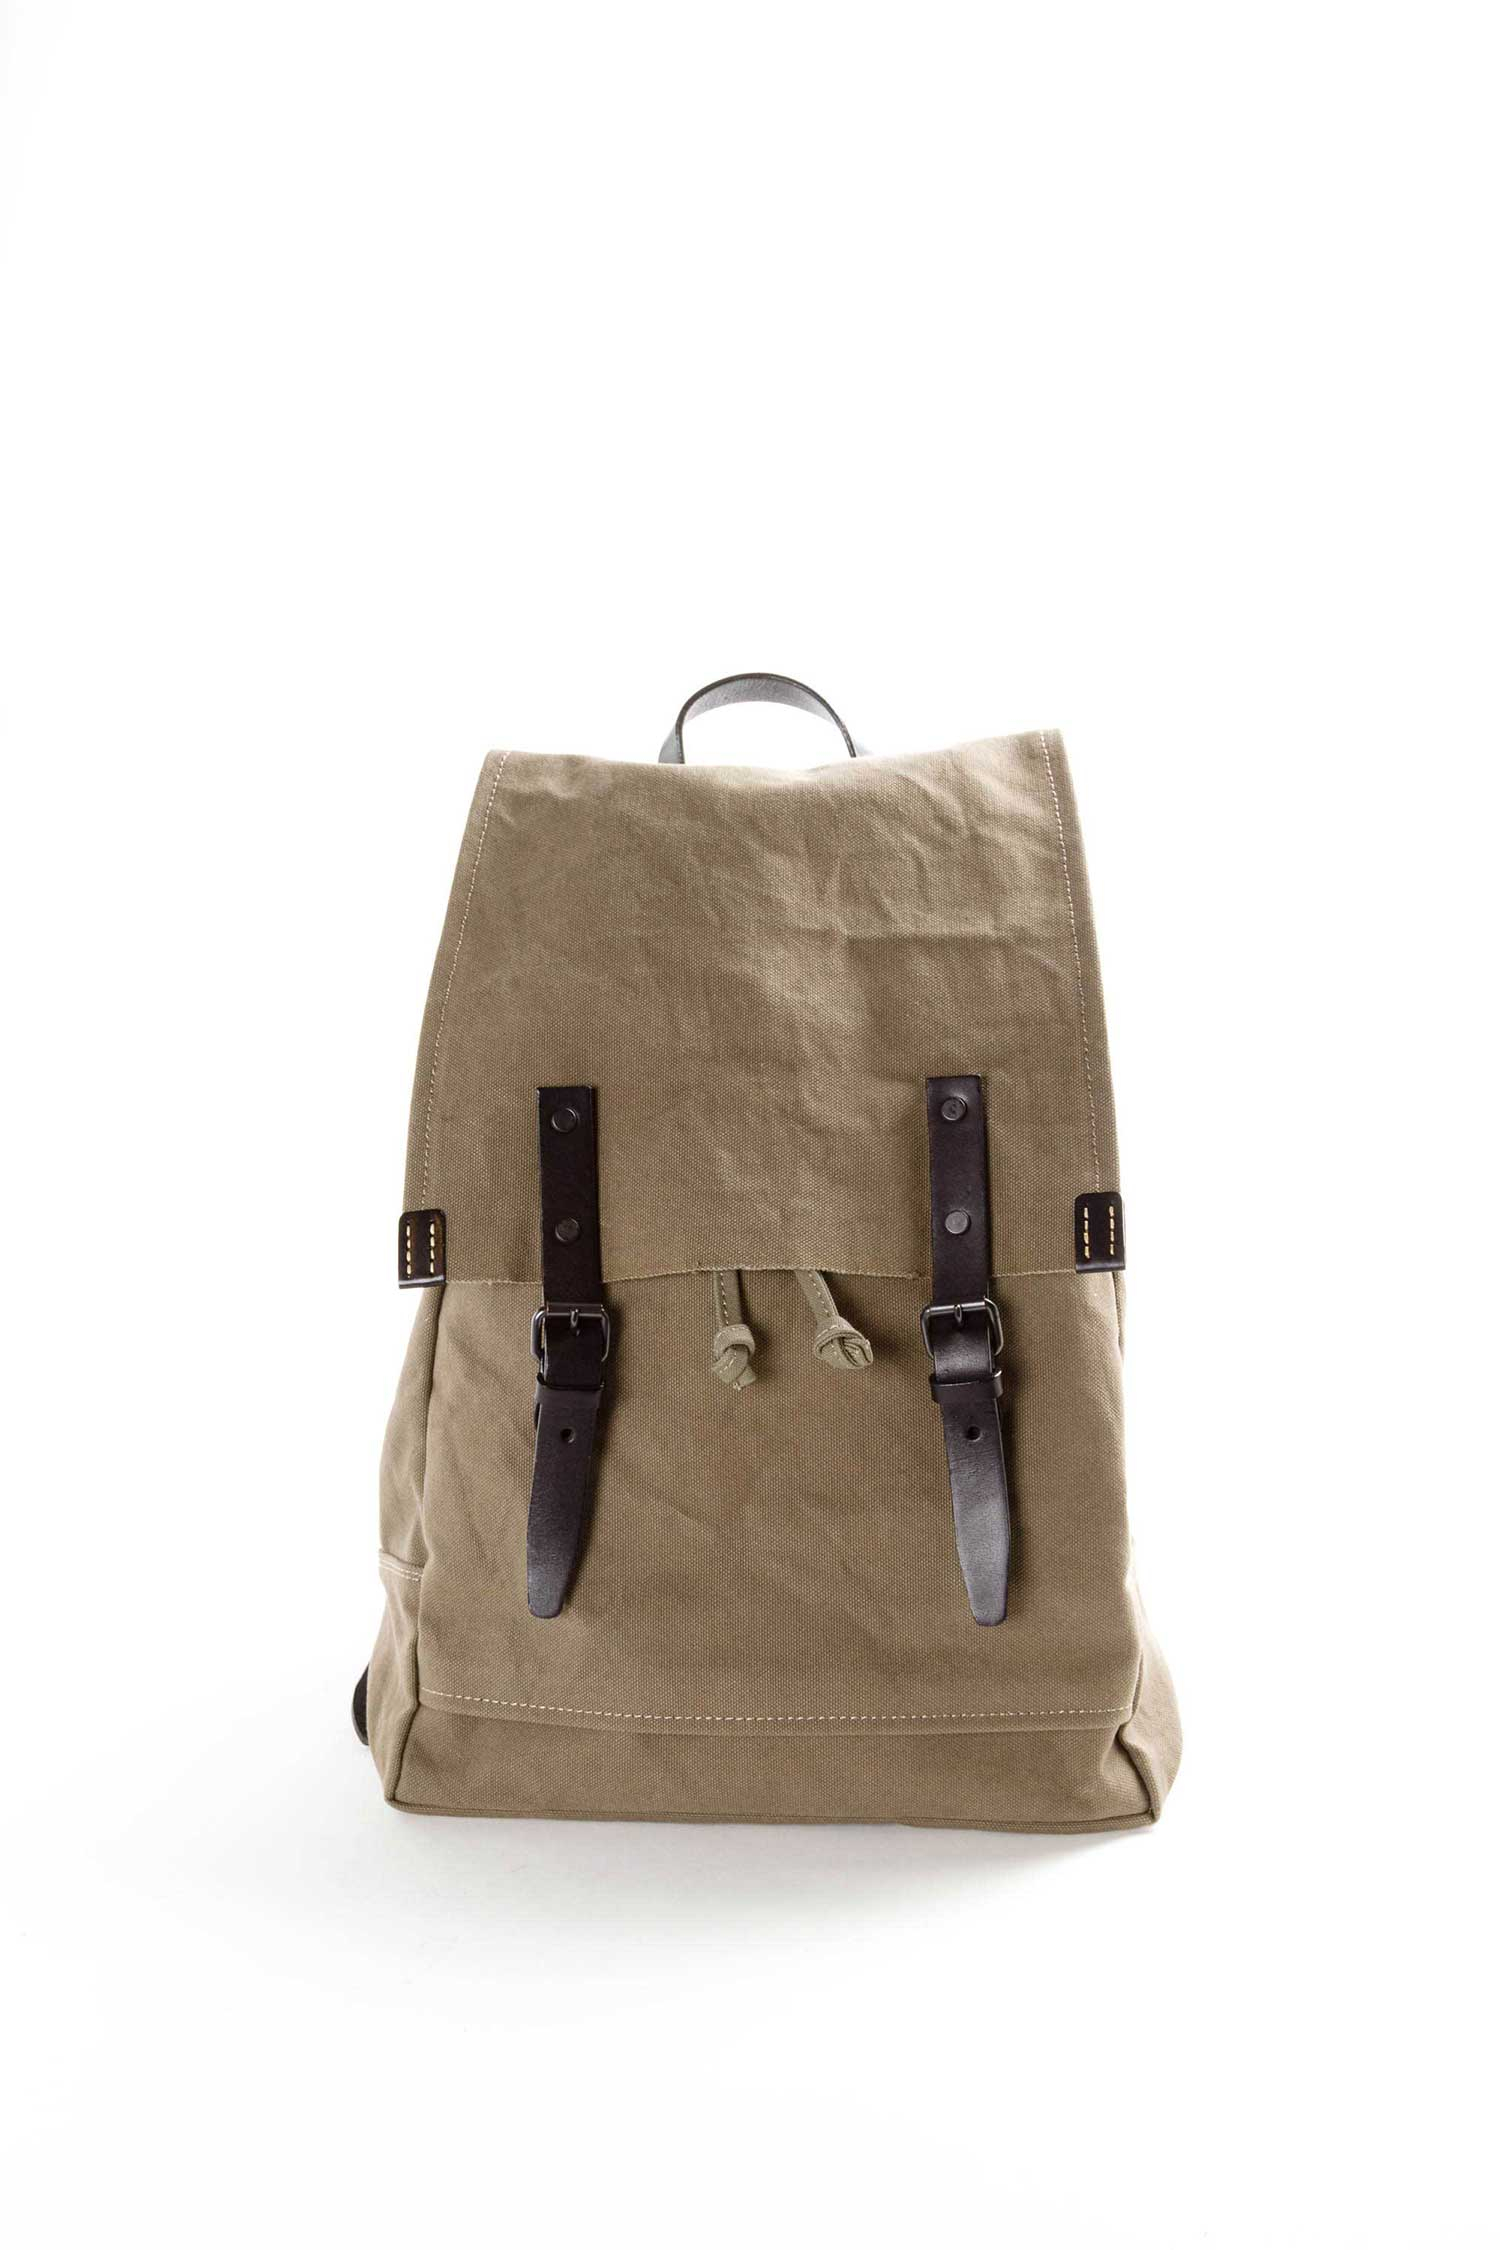 Baggy Port - KBS Backpack, khaki light/black - OOID Store, CHF 269.00